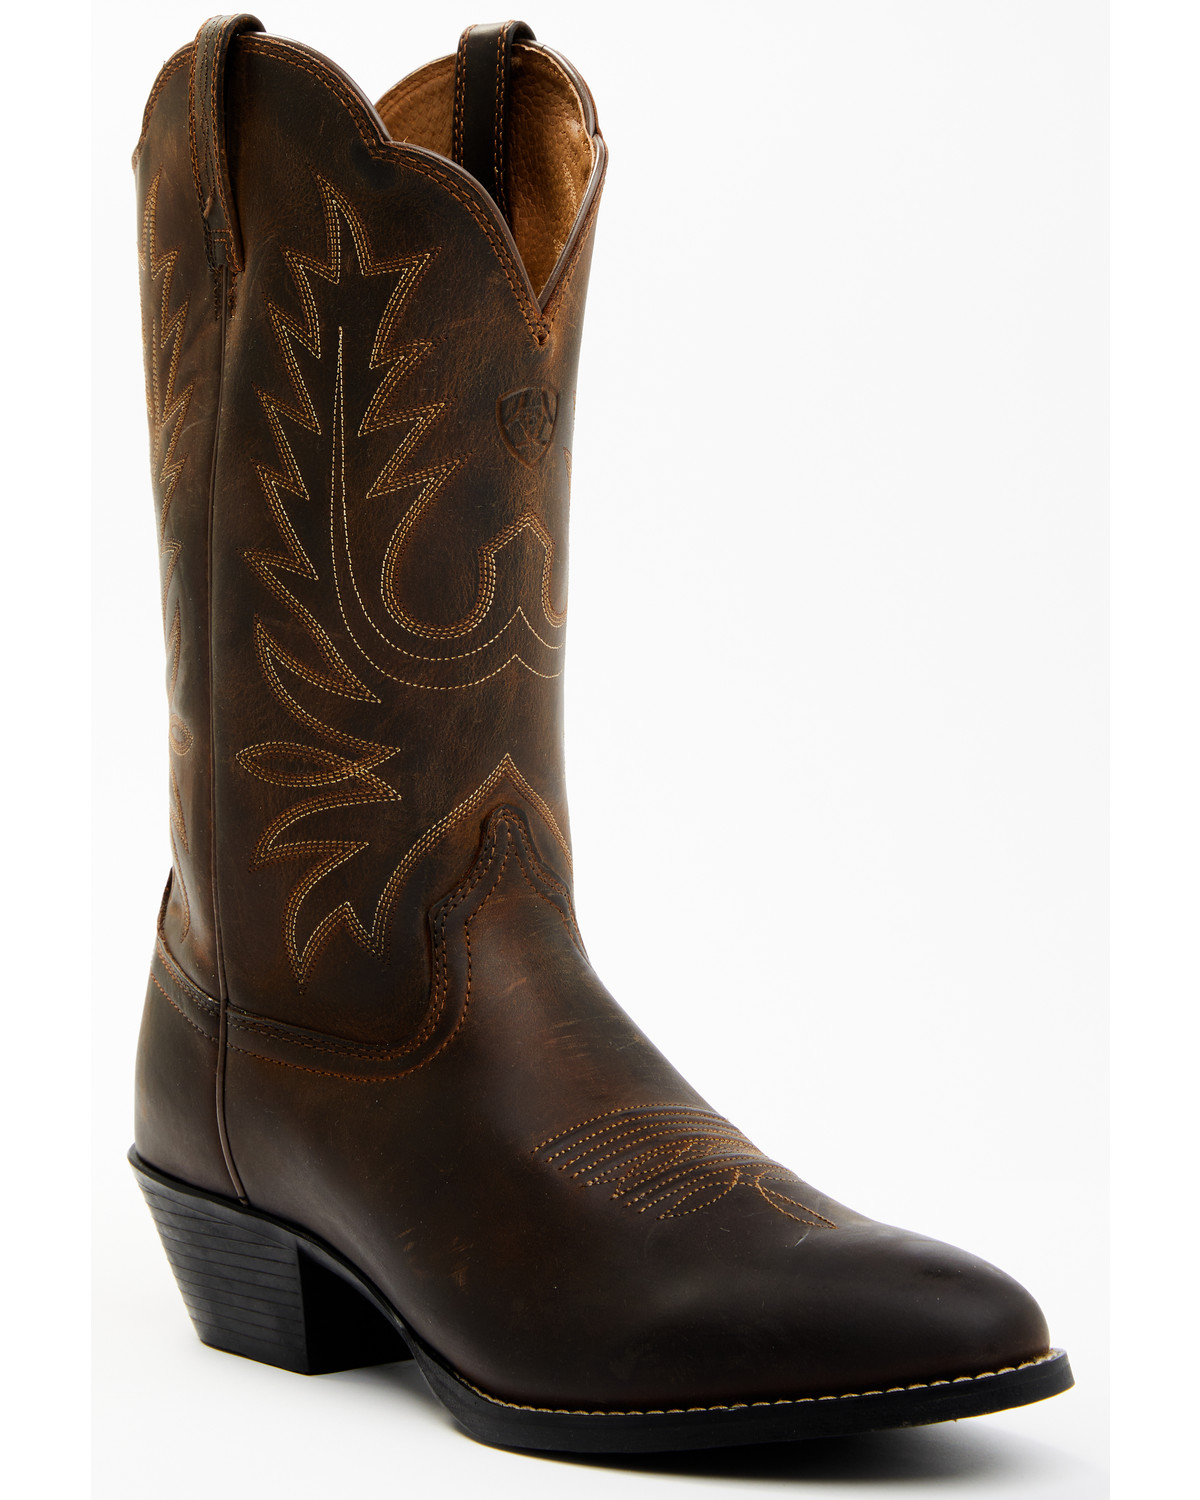 Heritage Western Boots - Medium Toe 